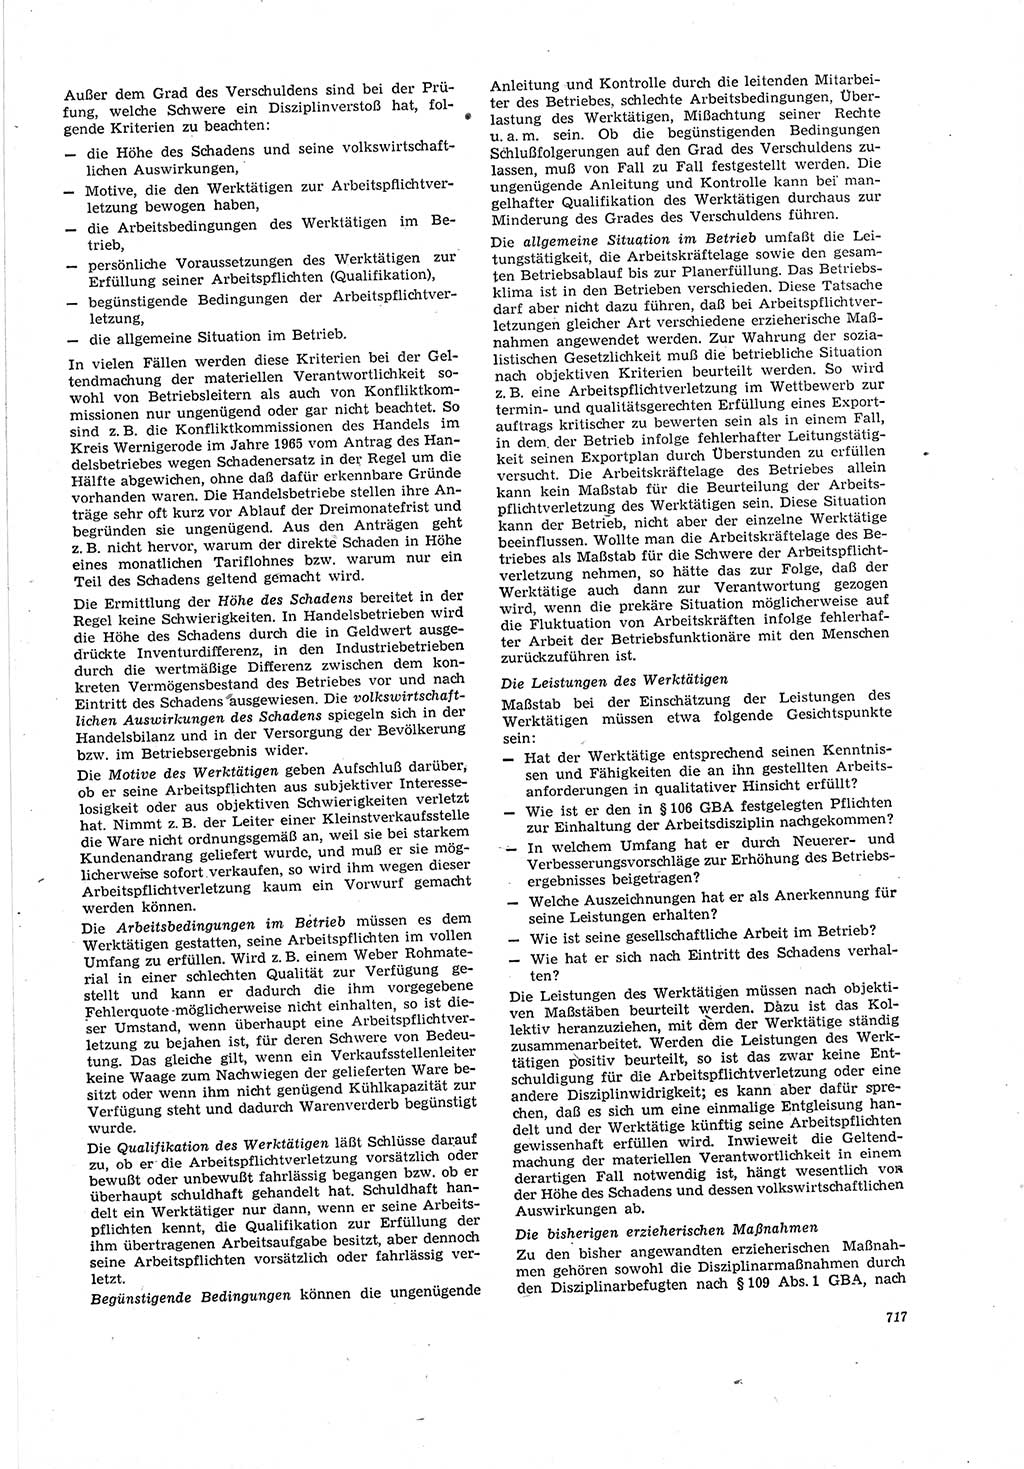 Neue Justiz (NJ), Zeitschrift für Recht und Rechtswissenschaft [Deutsche Demokratische Republik (DDR)], 20. Jahrgang 1966, Seite 717 (NJ DDR 1966, S. 717)